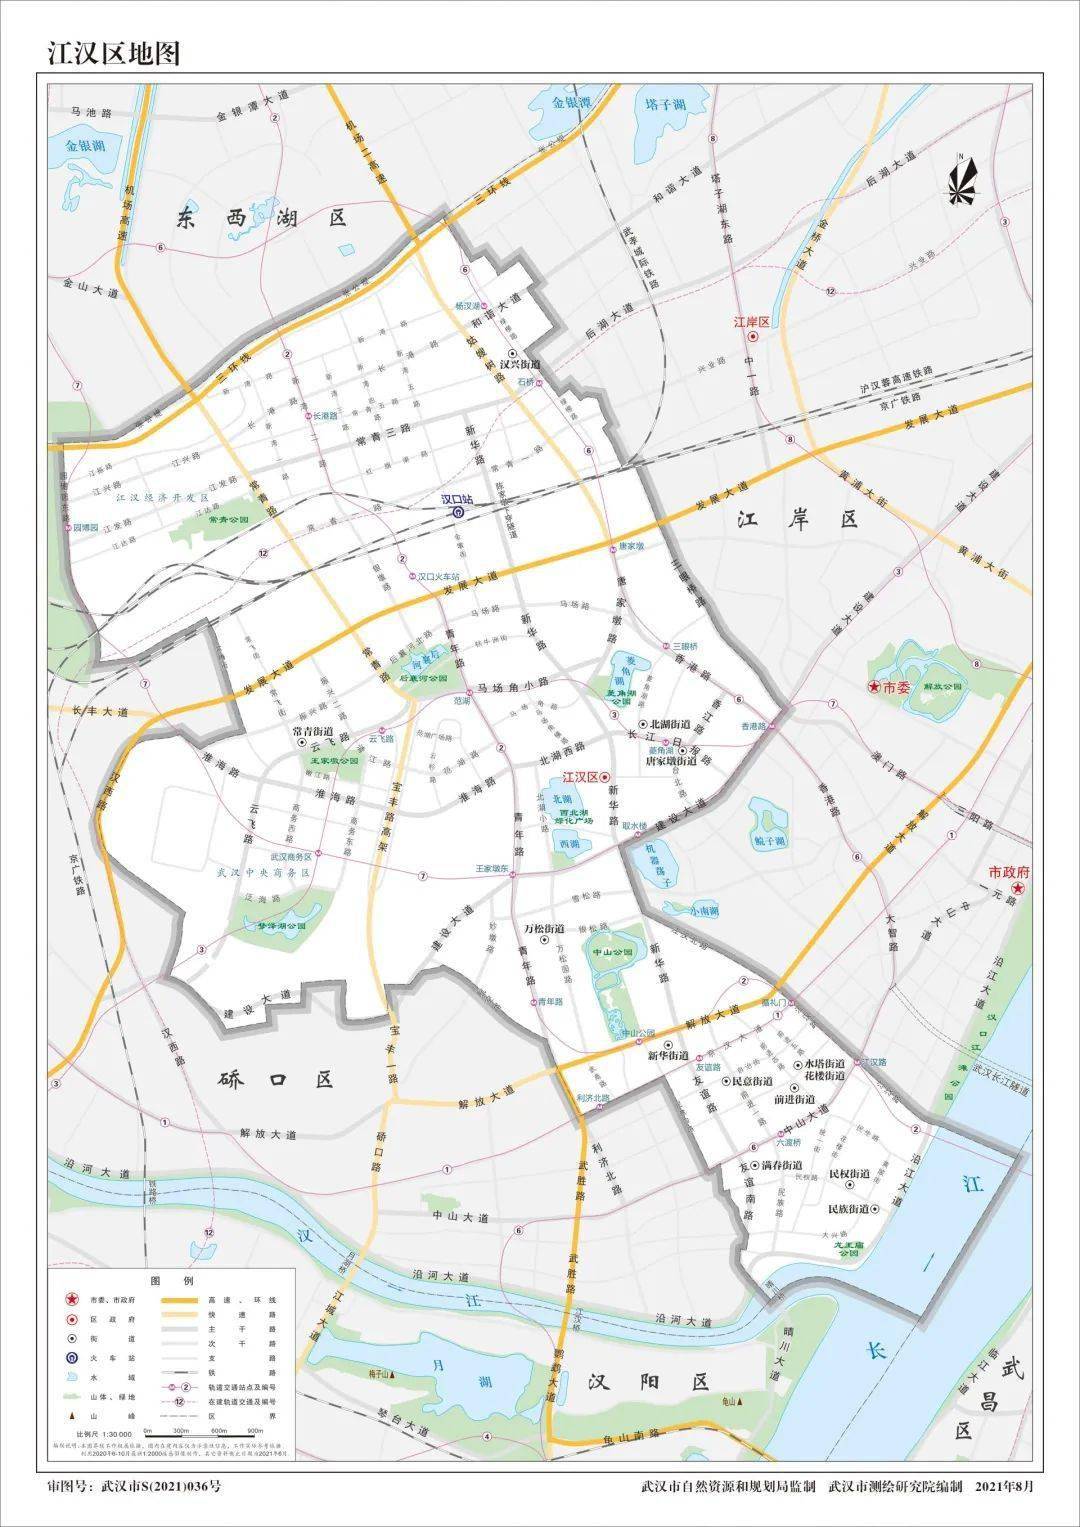 江汉区地图江岸区地图武汉市中心城区地图《2021年武汉市地图》.